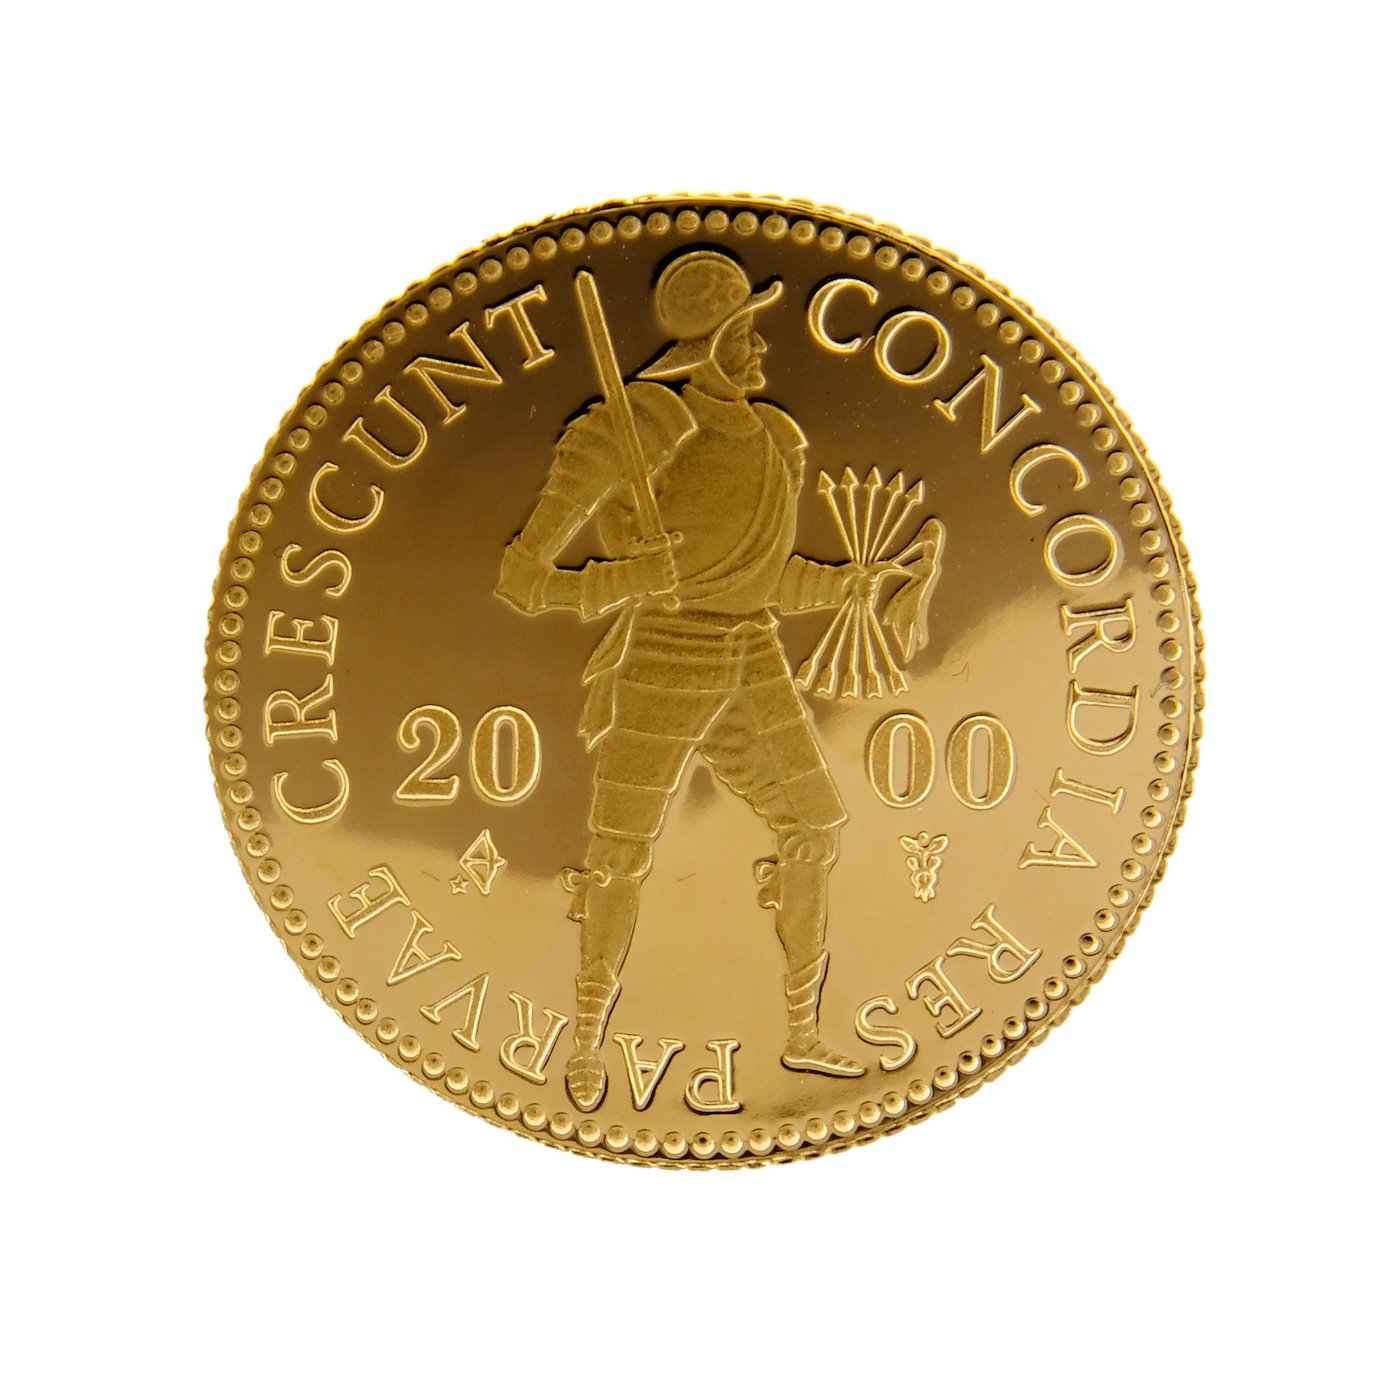 Mince - Nizozemsko zlatý obchodní dukát 2000 PROOF certifikát. Zlato 983/1000, hrubá hmotnost 3,494g.